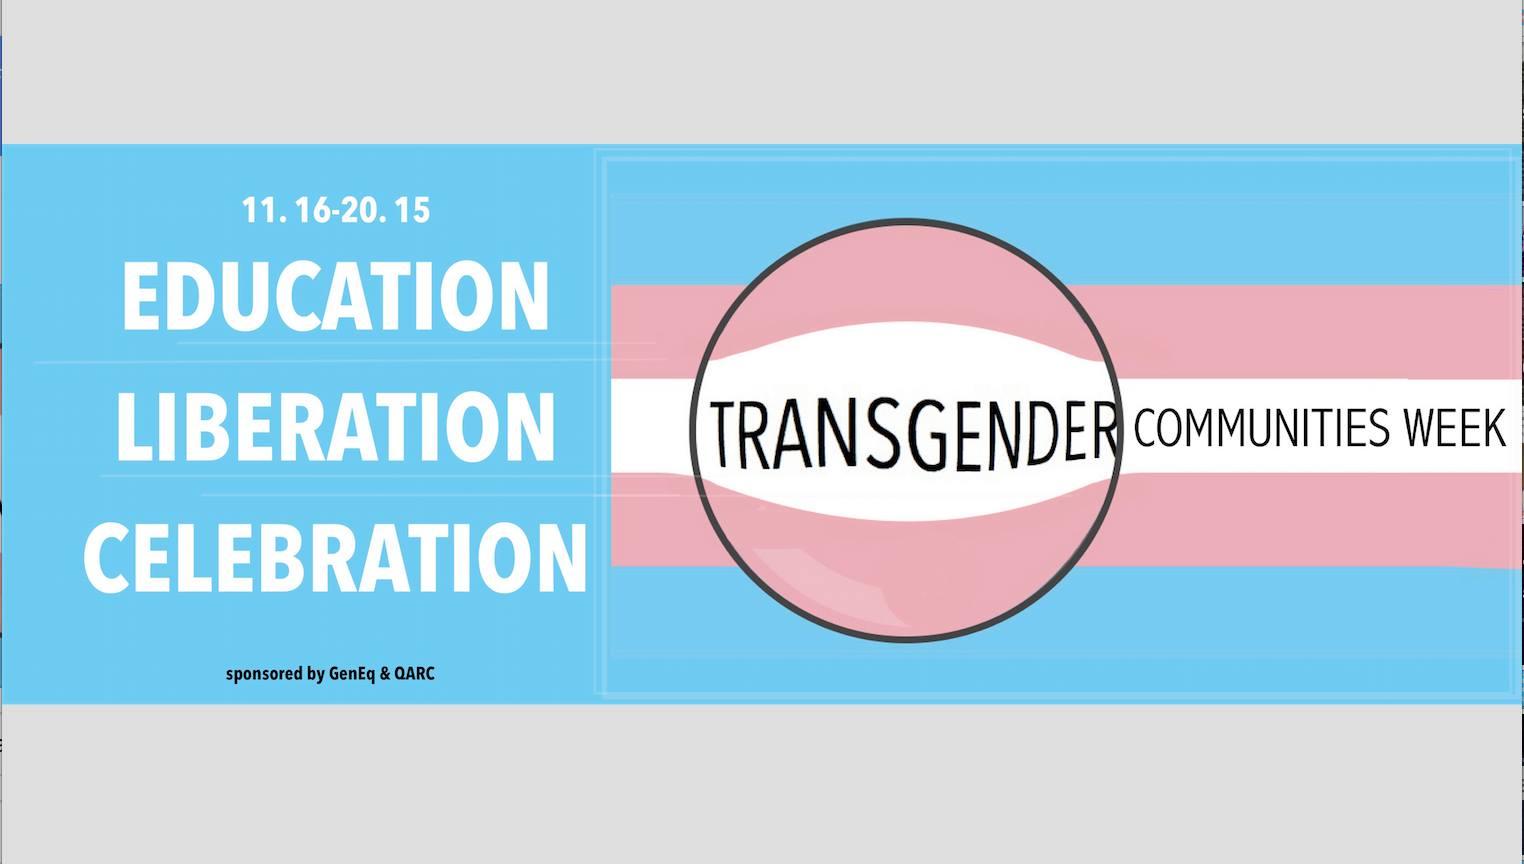 Transgender Communities Week